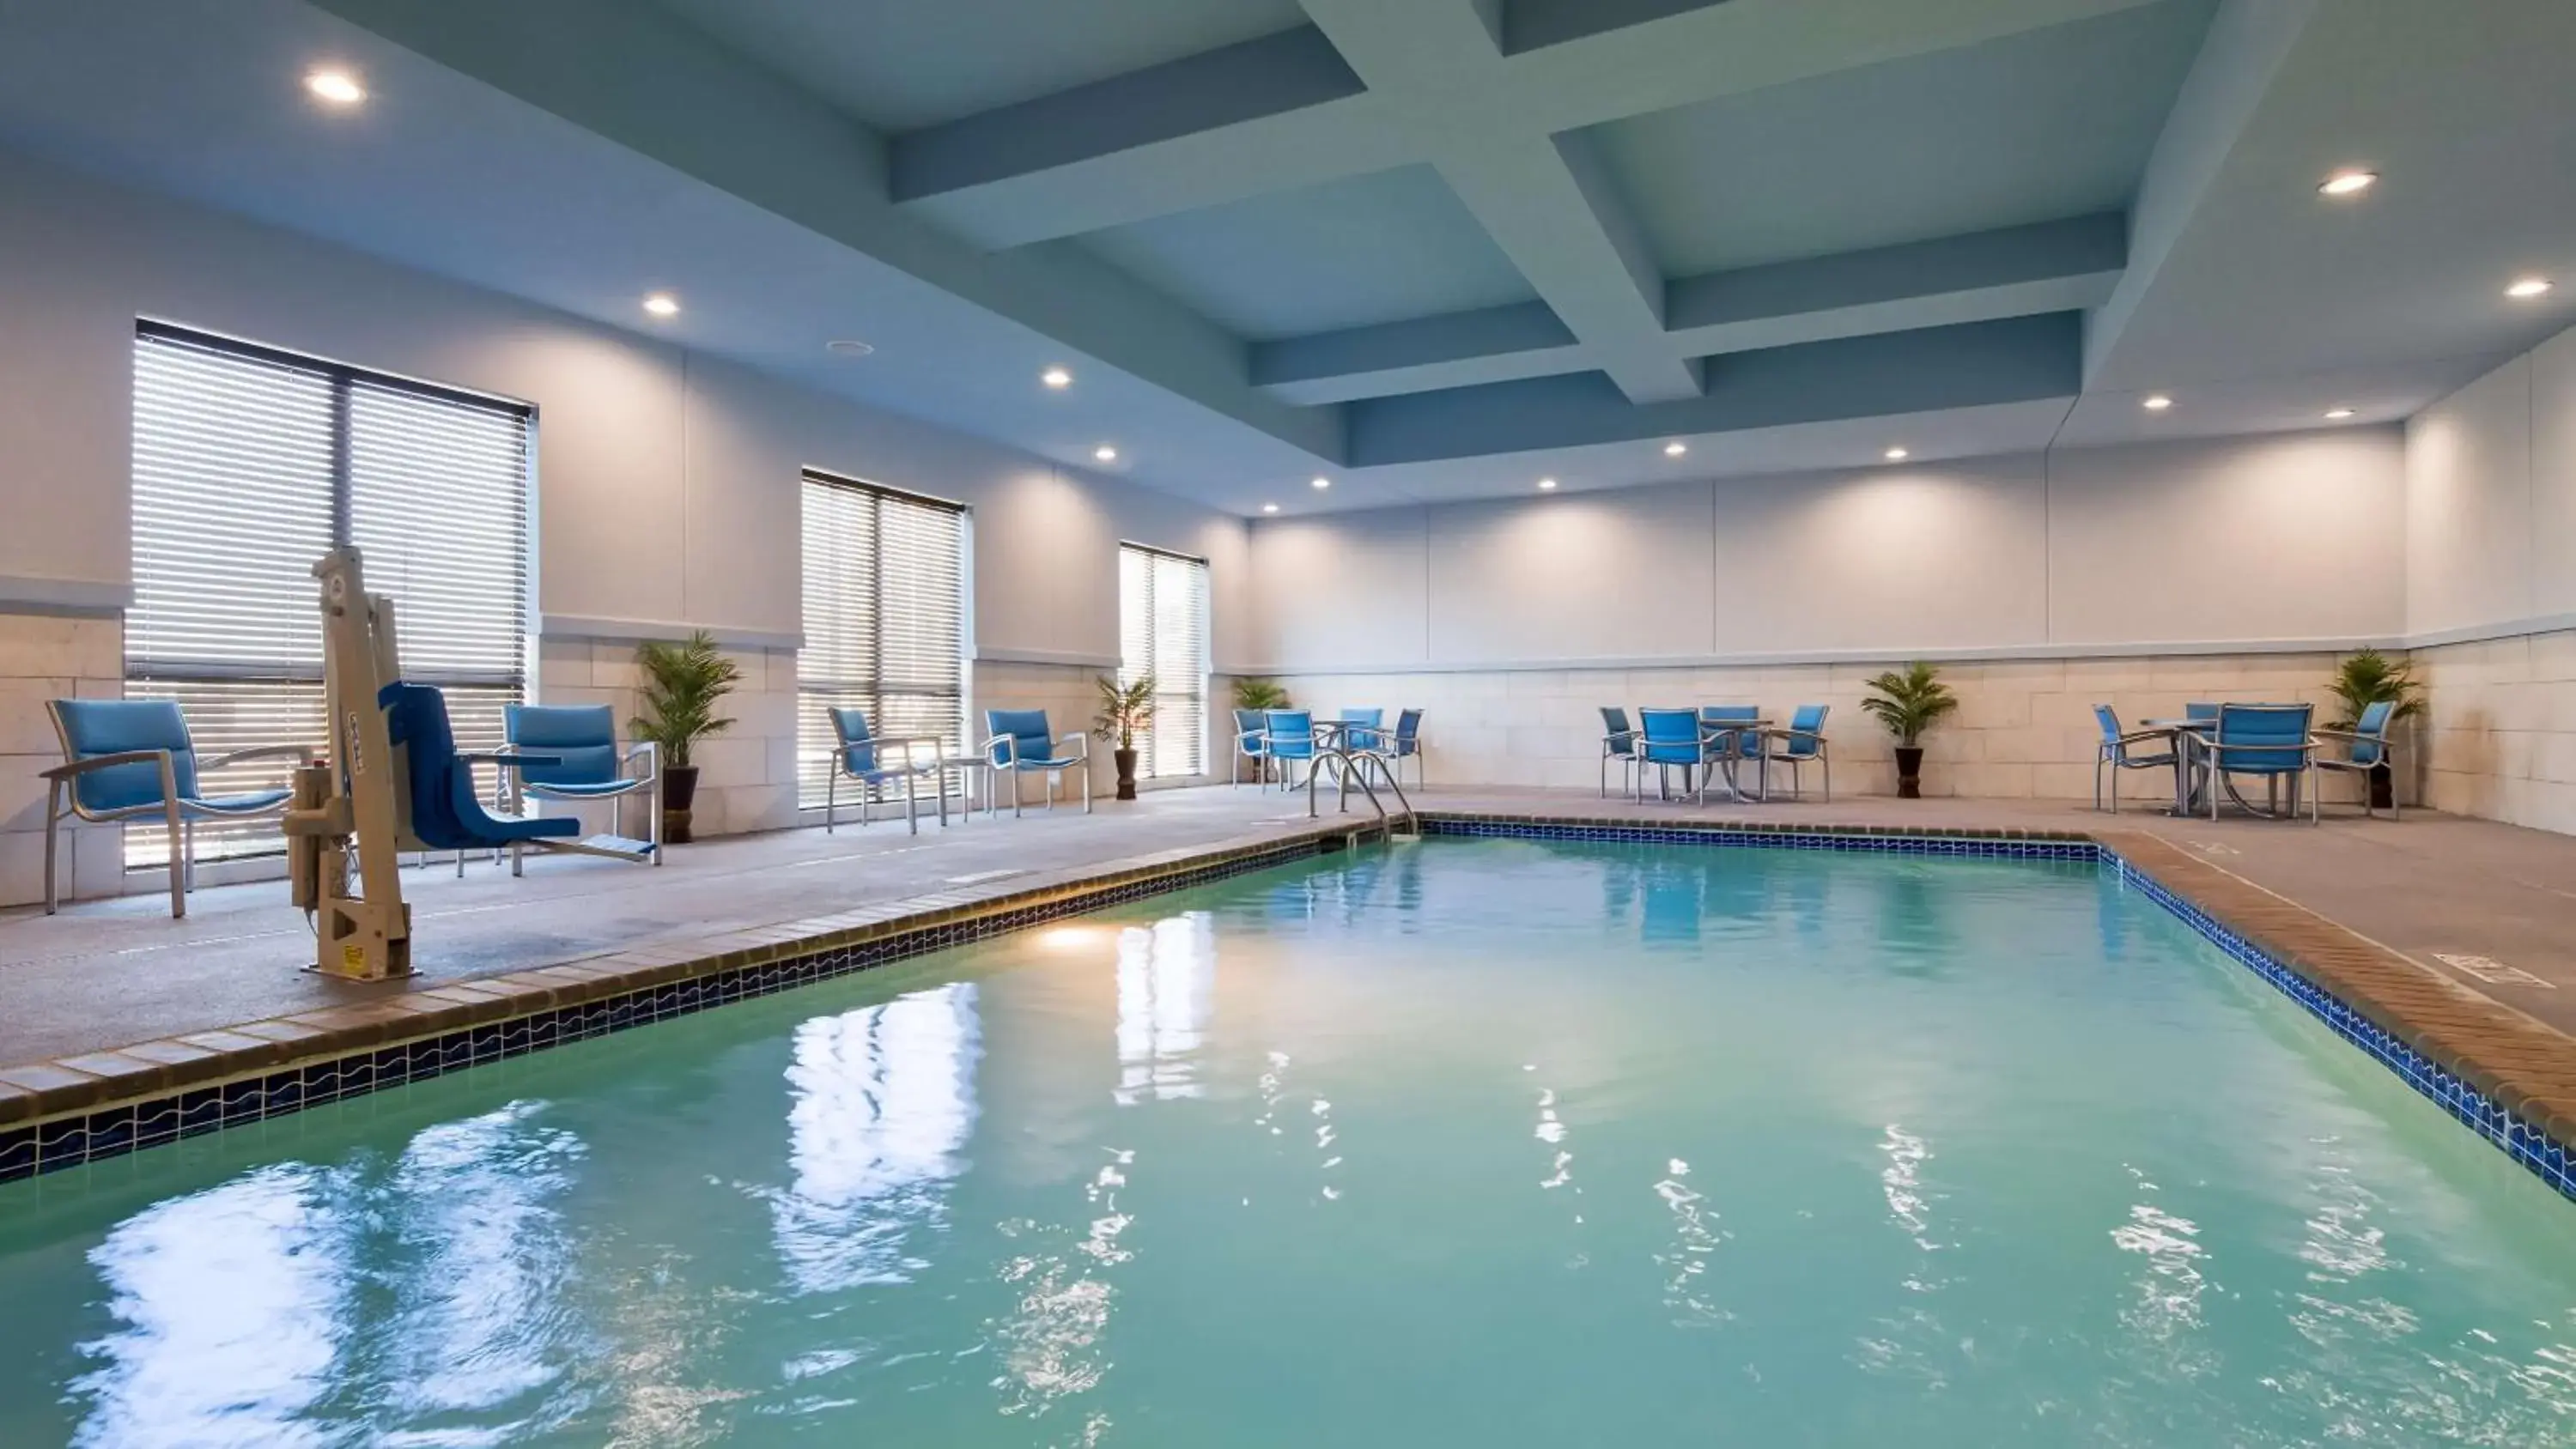 On site, Swimming Pool in Best Western Plus Buda Austin Inn & Suites